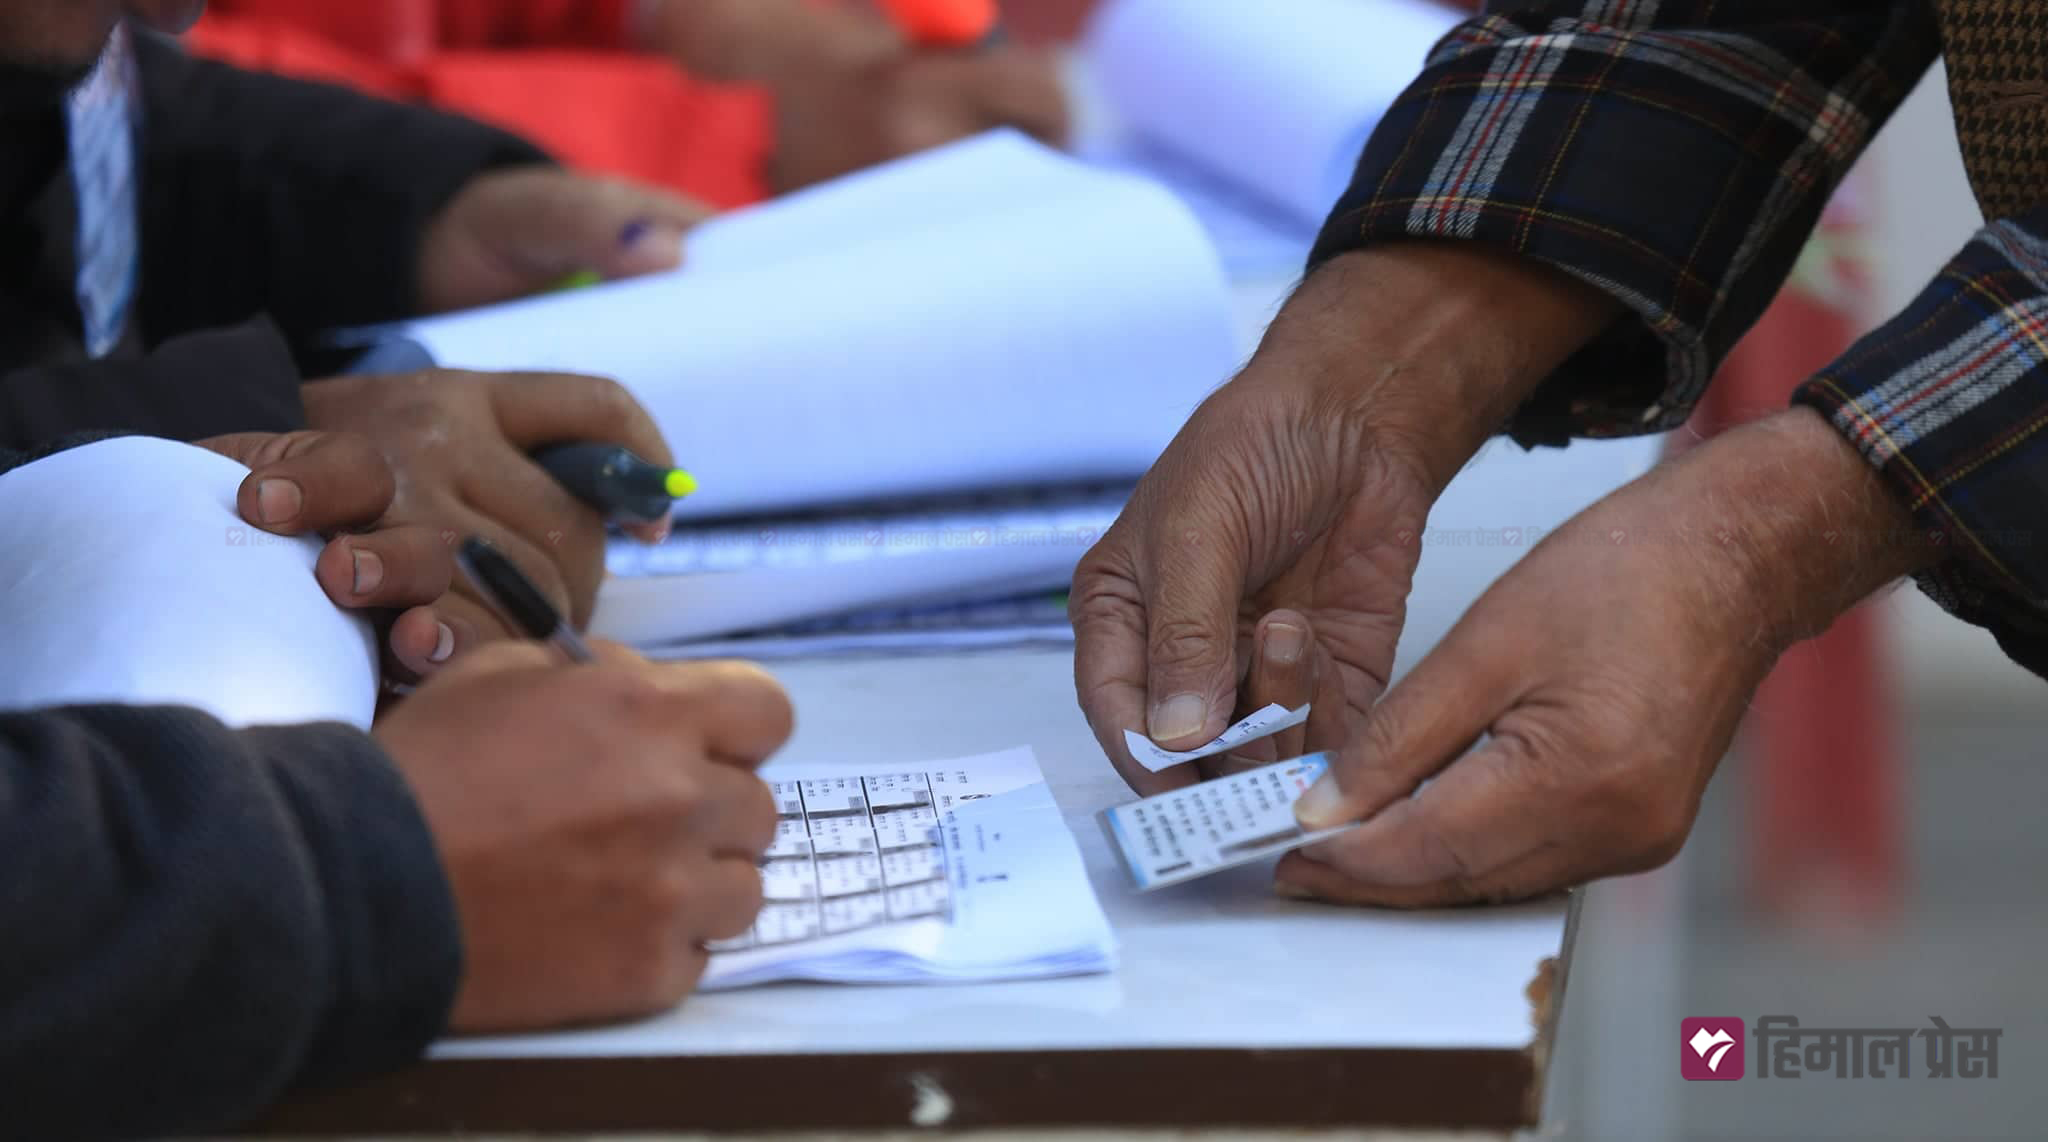 सुनसरीमा मतदान जारी, ४९ प्रतिशत मत खस्यो